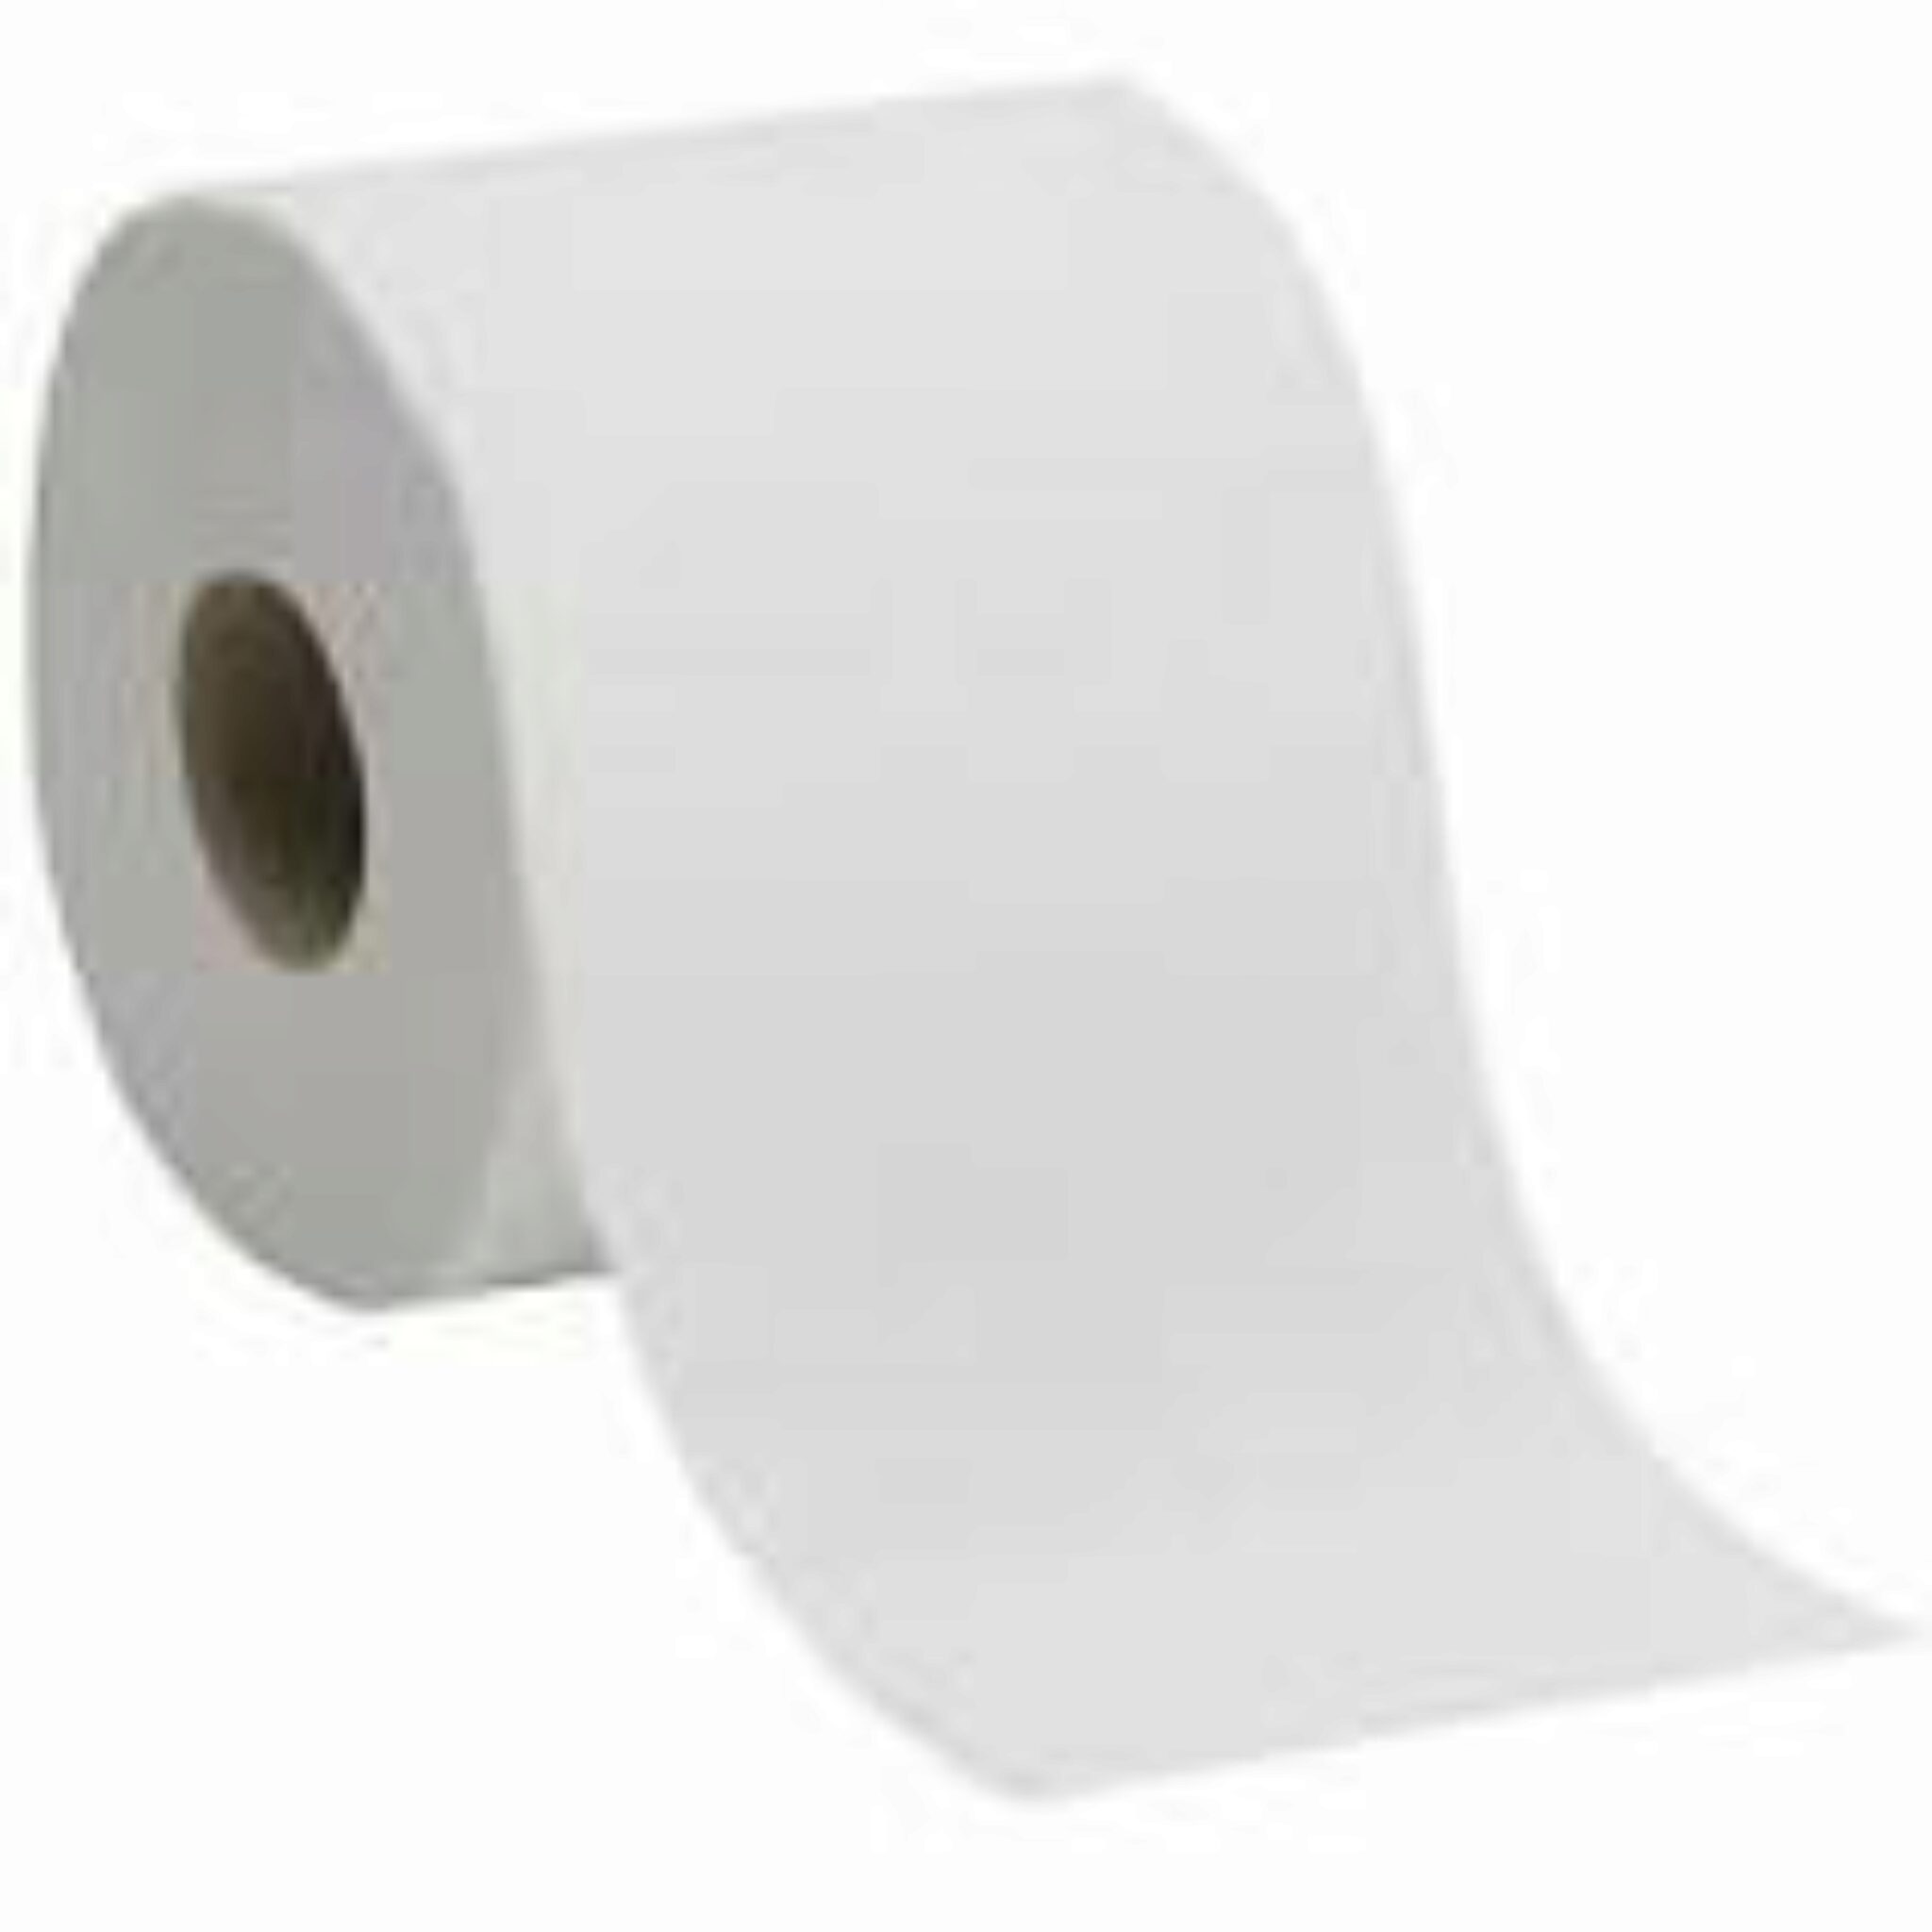 Est il Possible Dutiliser Du Papier Toilette Avec Des Toilettes à Compost